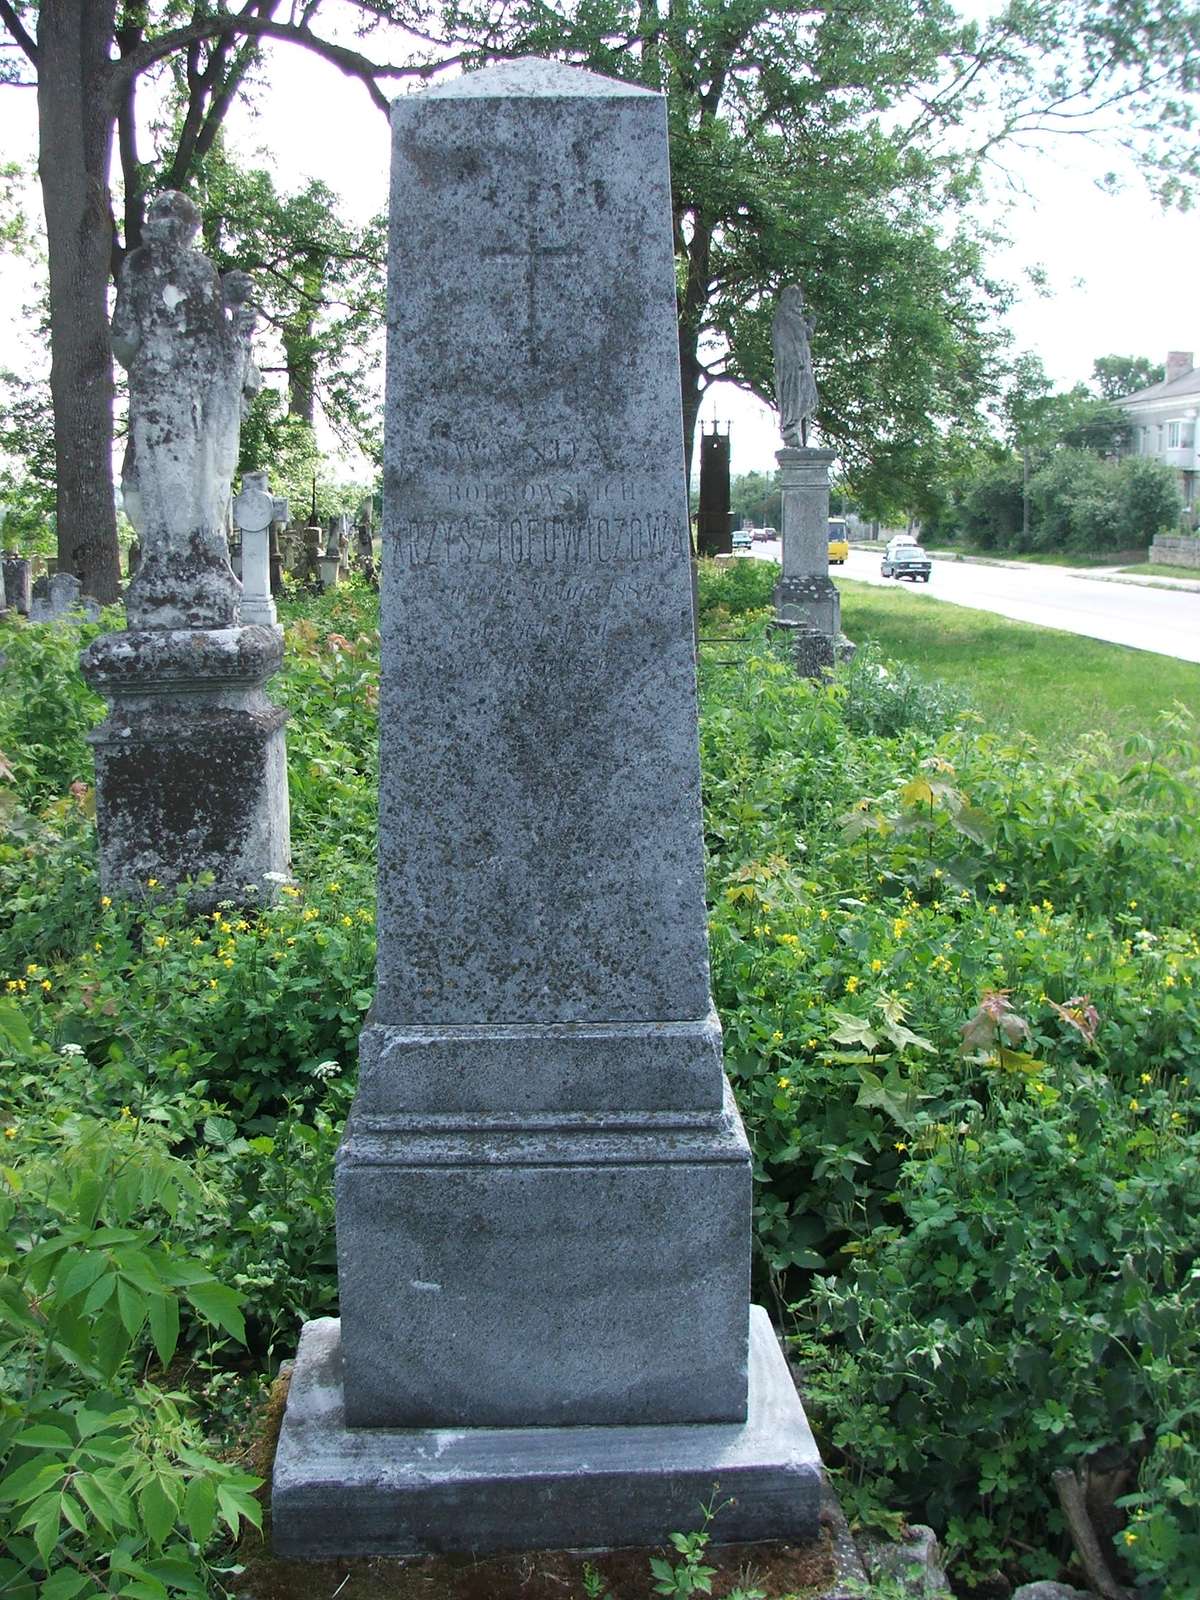 Tombstone of Wanda Krzysztofowicz, Zbarazh cemetery, as of 2018